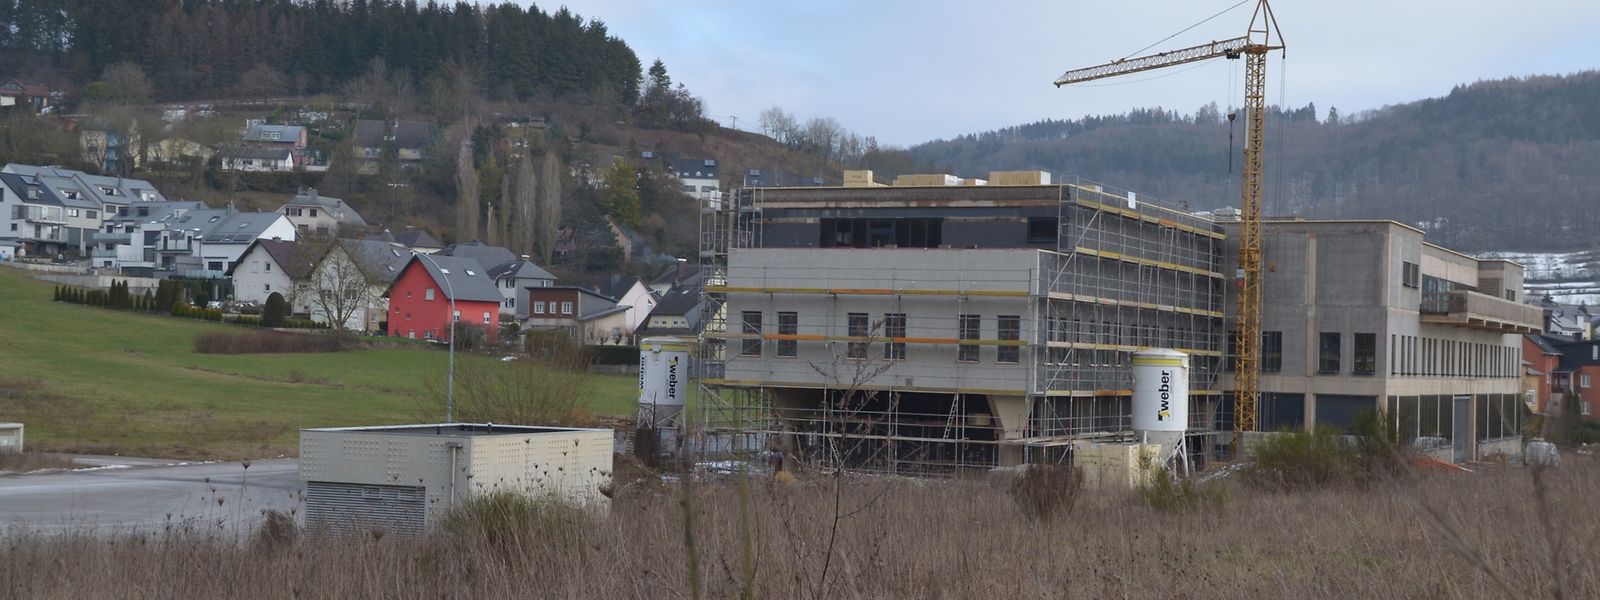 Die private Kontrollstation in Lorentzweiler geht ihrer Fertigstellung entgegen.